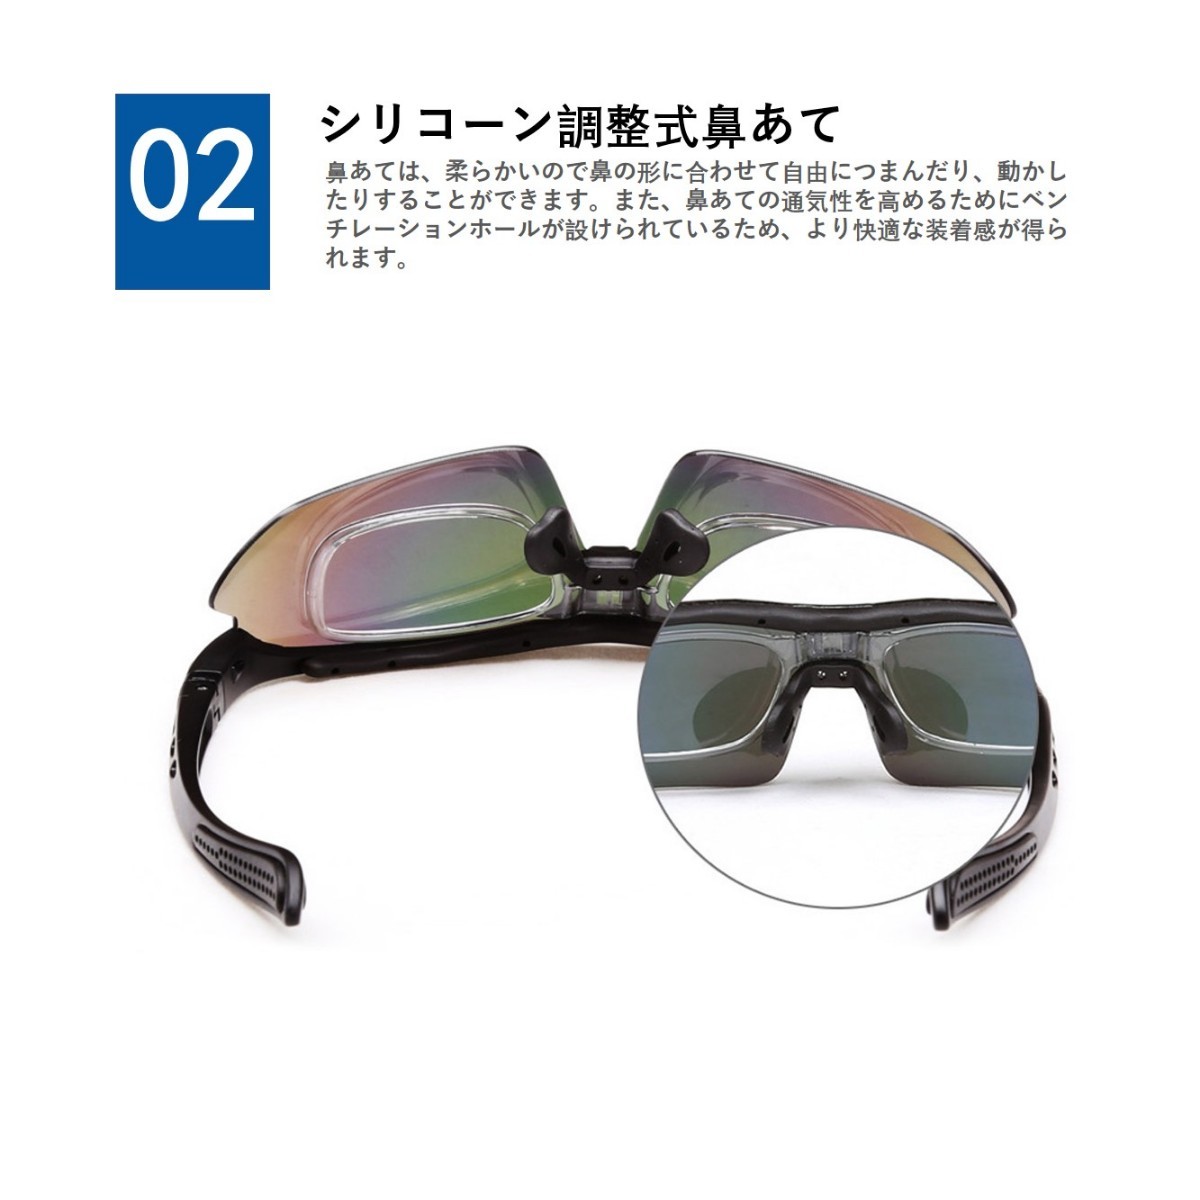 サングラス スポーツサングラス 偏光レンズ  偏光グラス 専用交換レンズ５枚 フレームセット バンド付 収納ケース付 